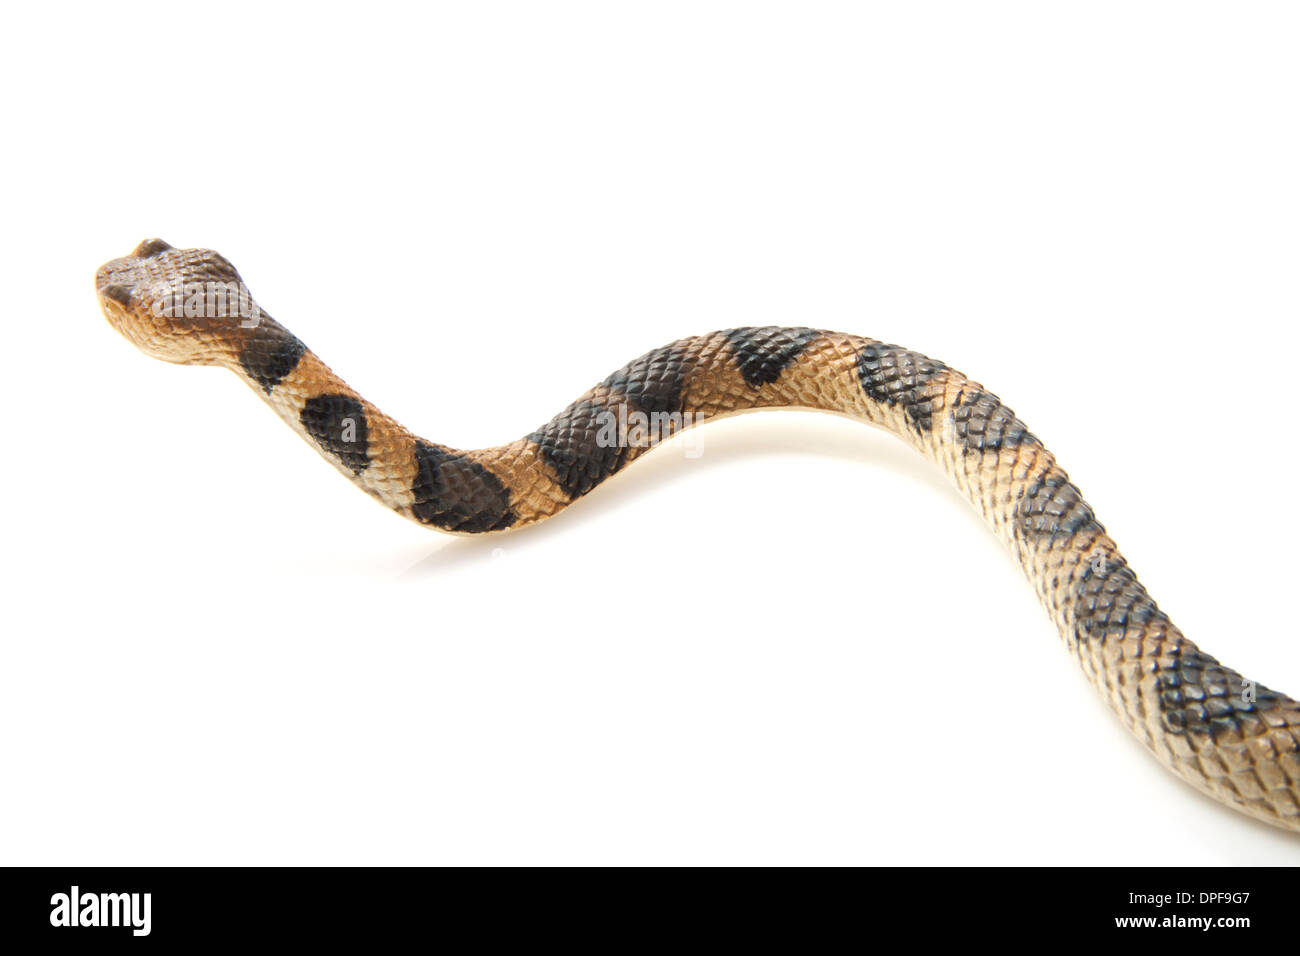 Creepy crawling serpent brun avec des taches noires sur fond blanc Banque D'Images